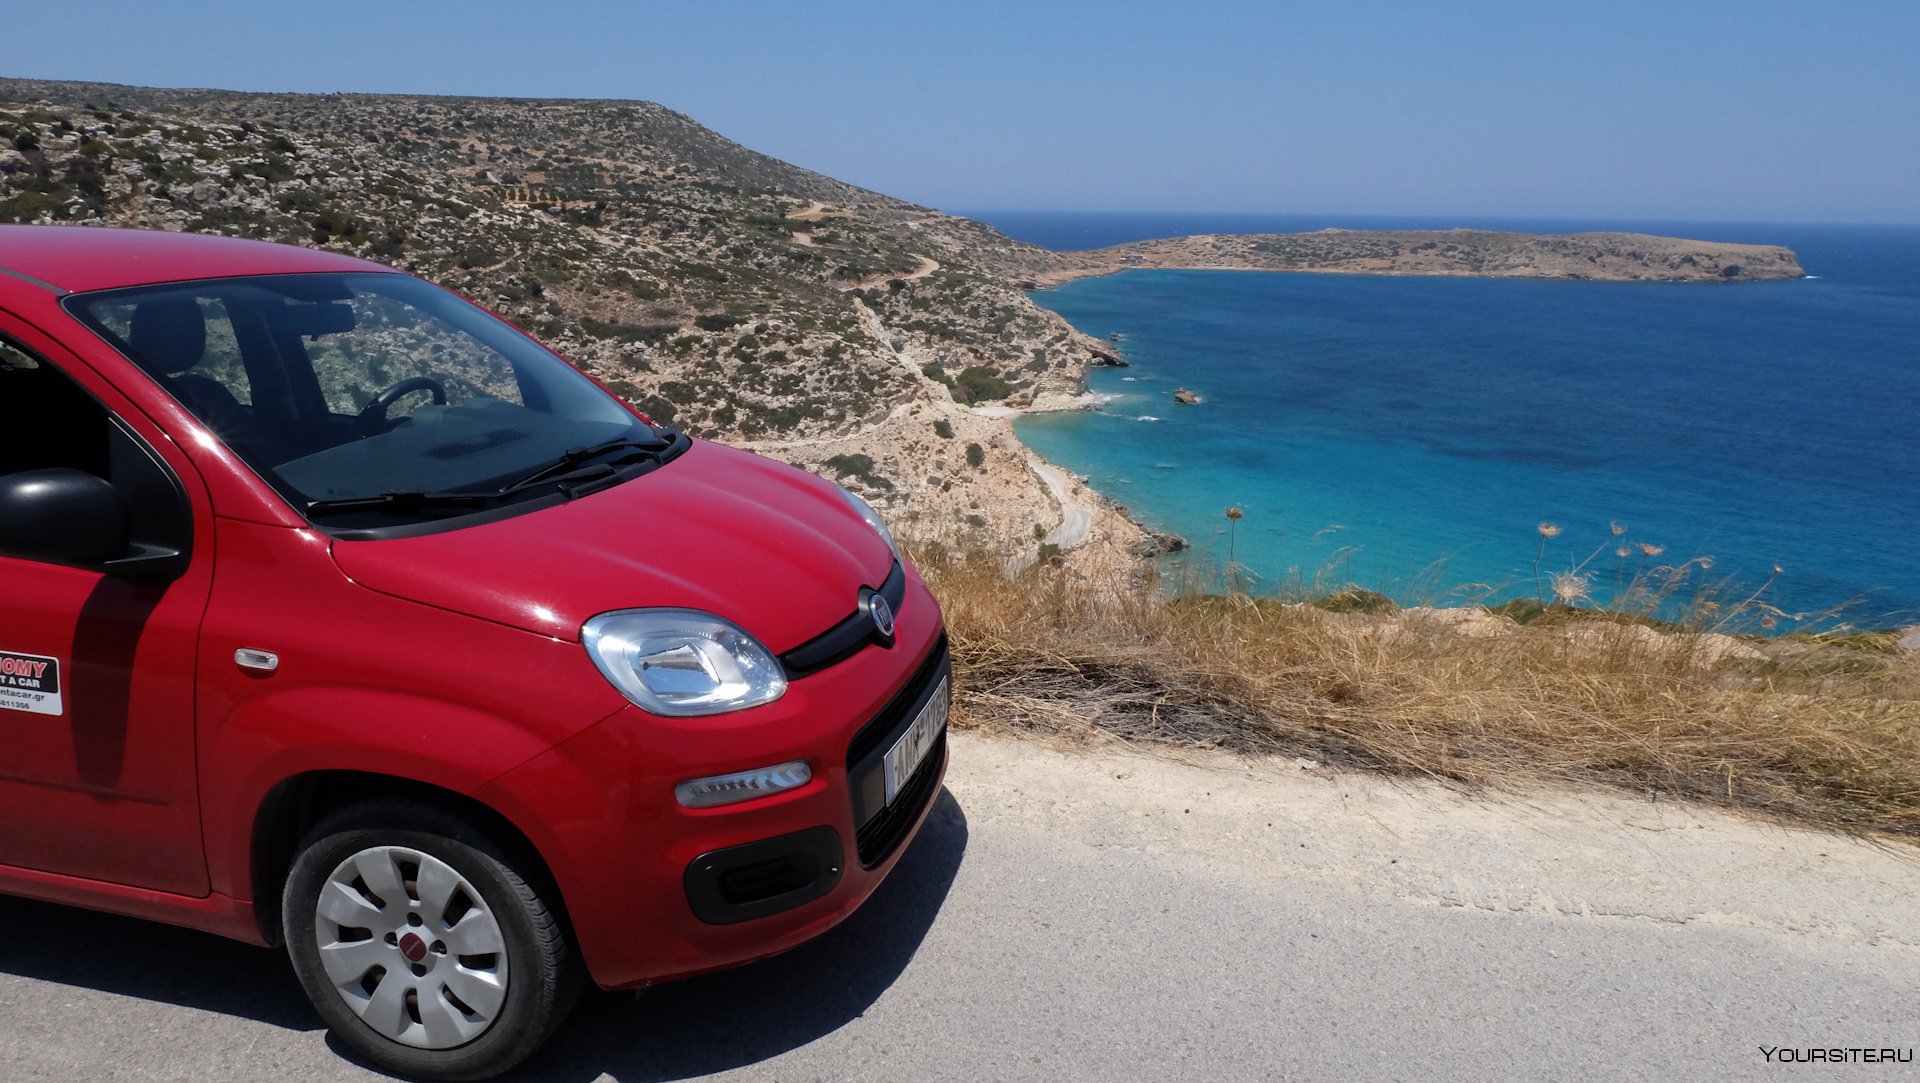 Аренда машины в турции. Машины в Греции. Крит машина. Португалия автомобили. Популярные машины в Греции.